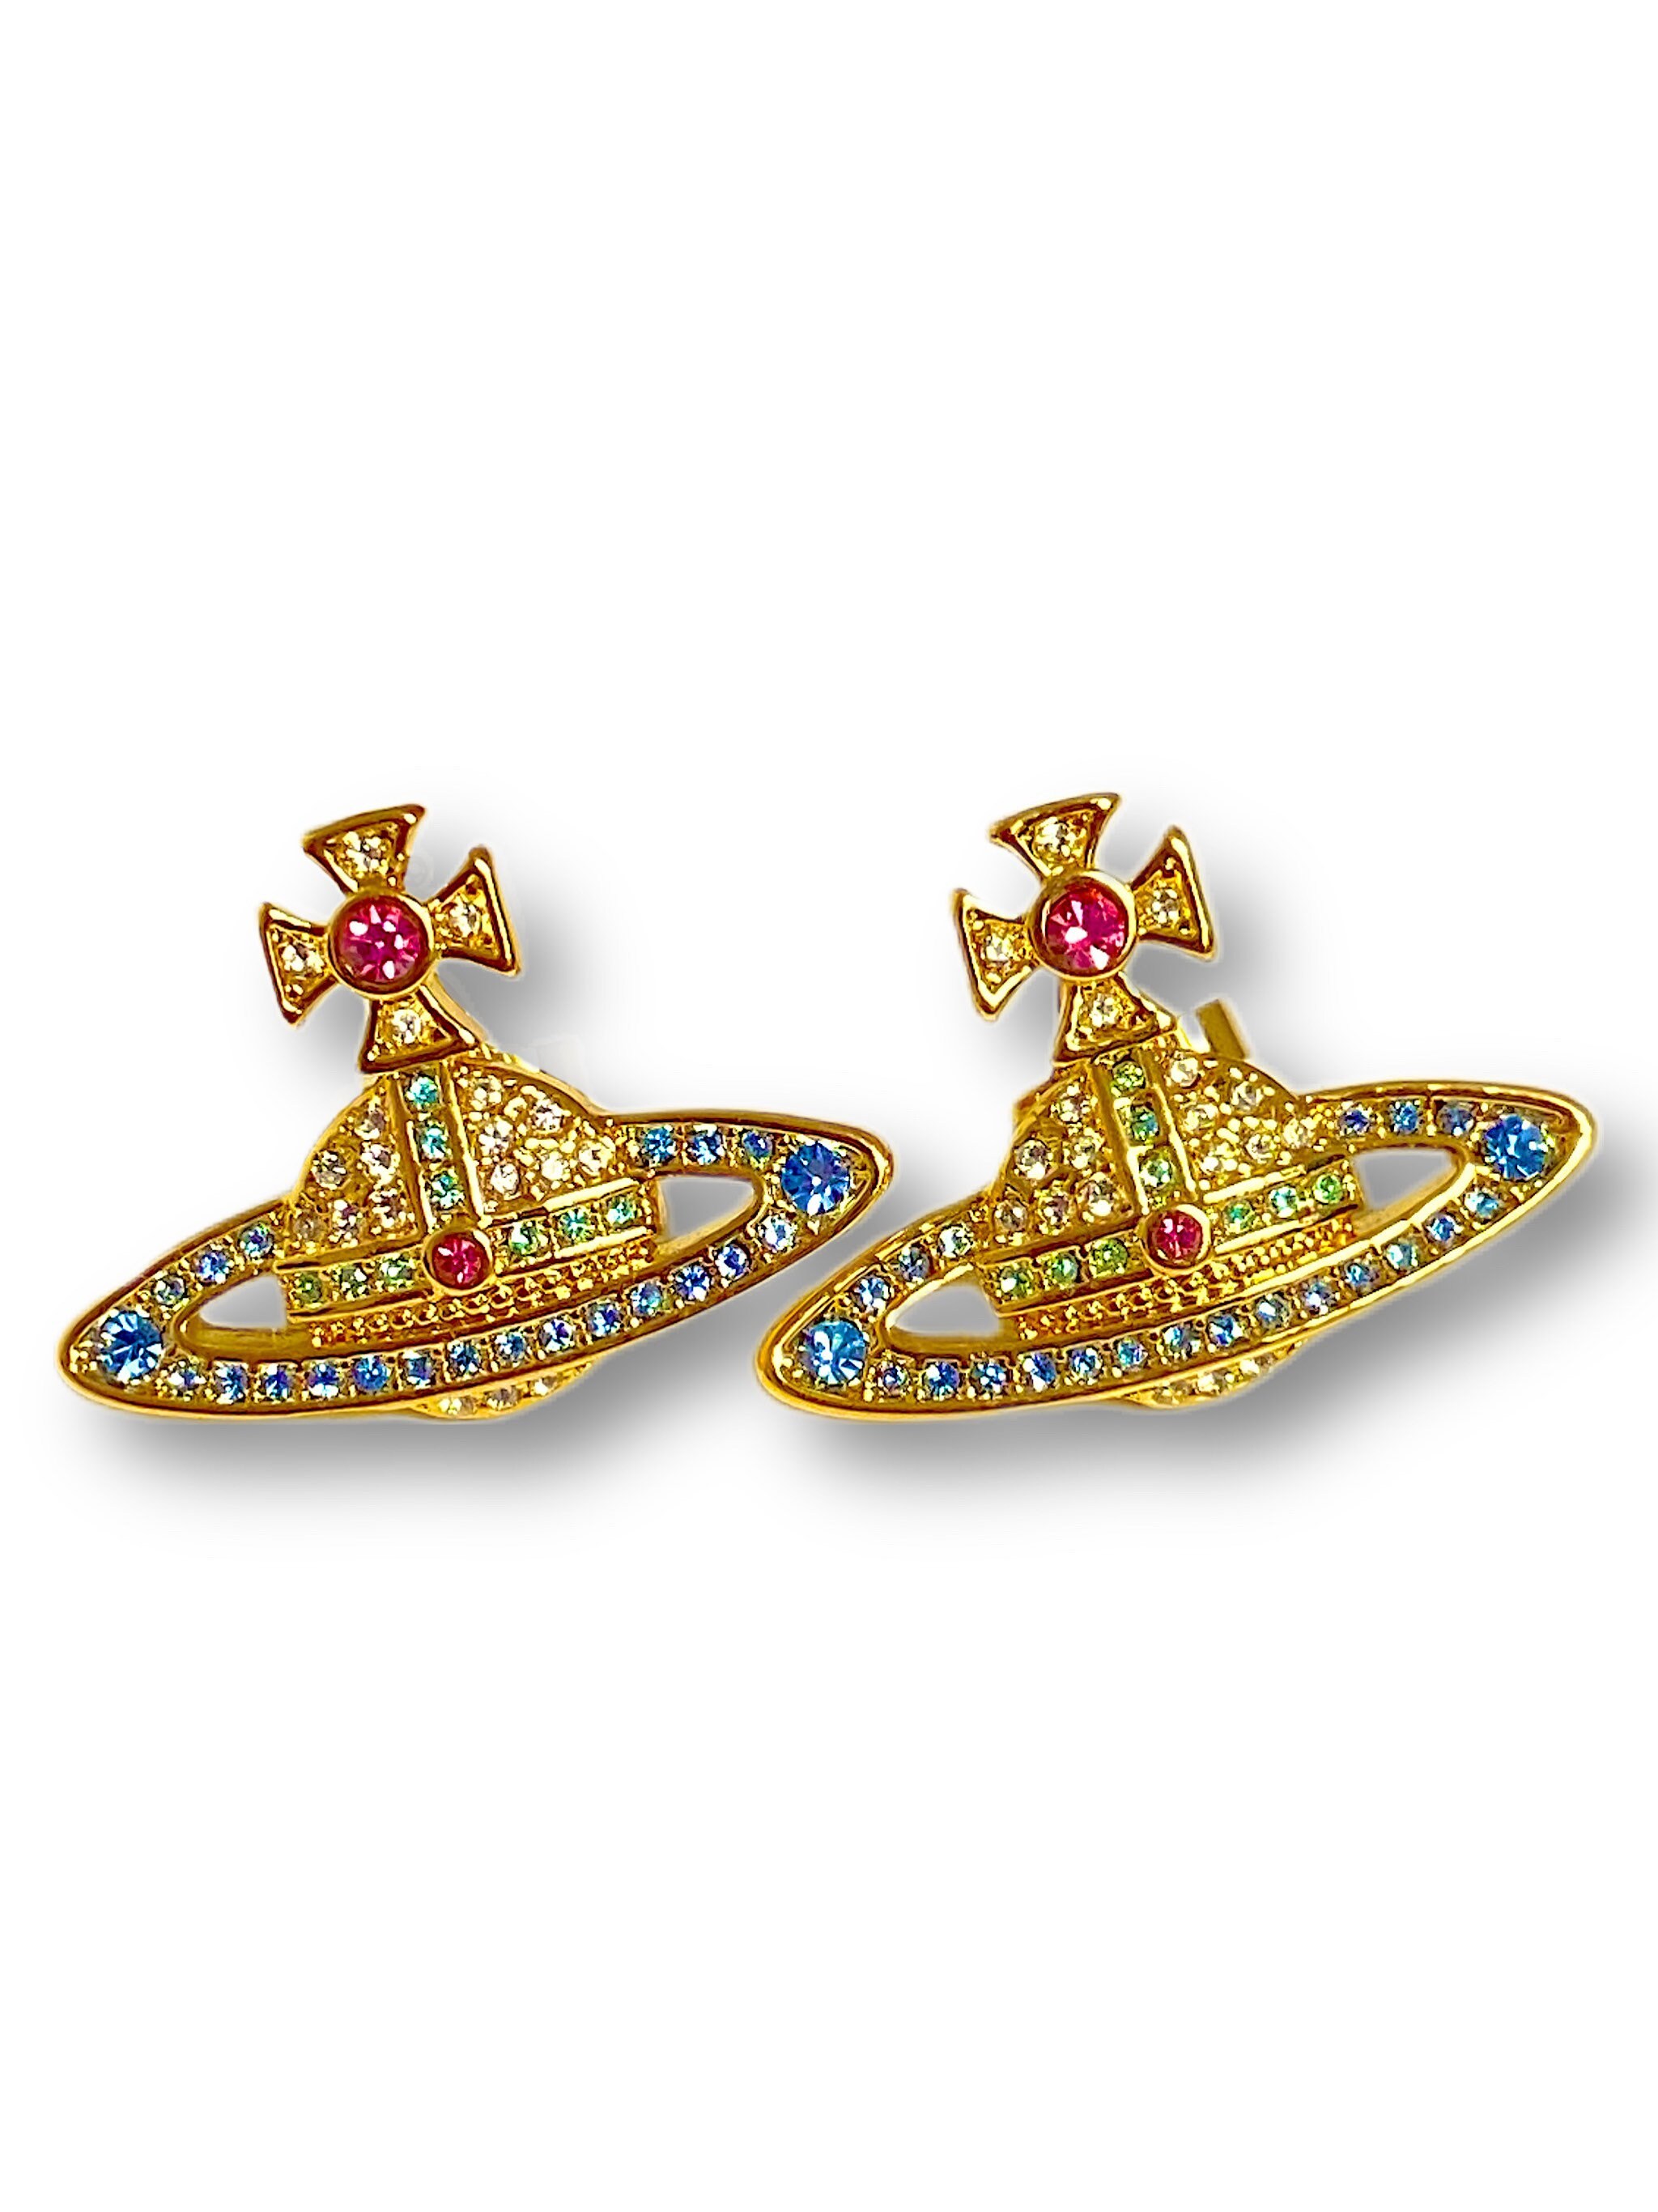 Vivienne Westwood Kika Bas Relief Stud Earrings Gold | Etsy